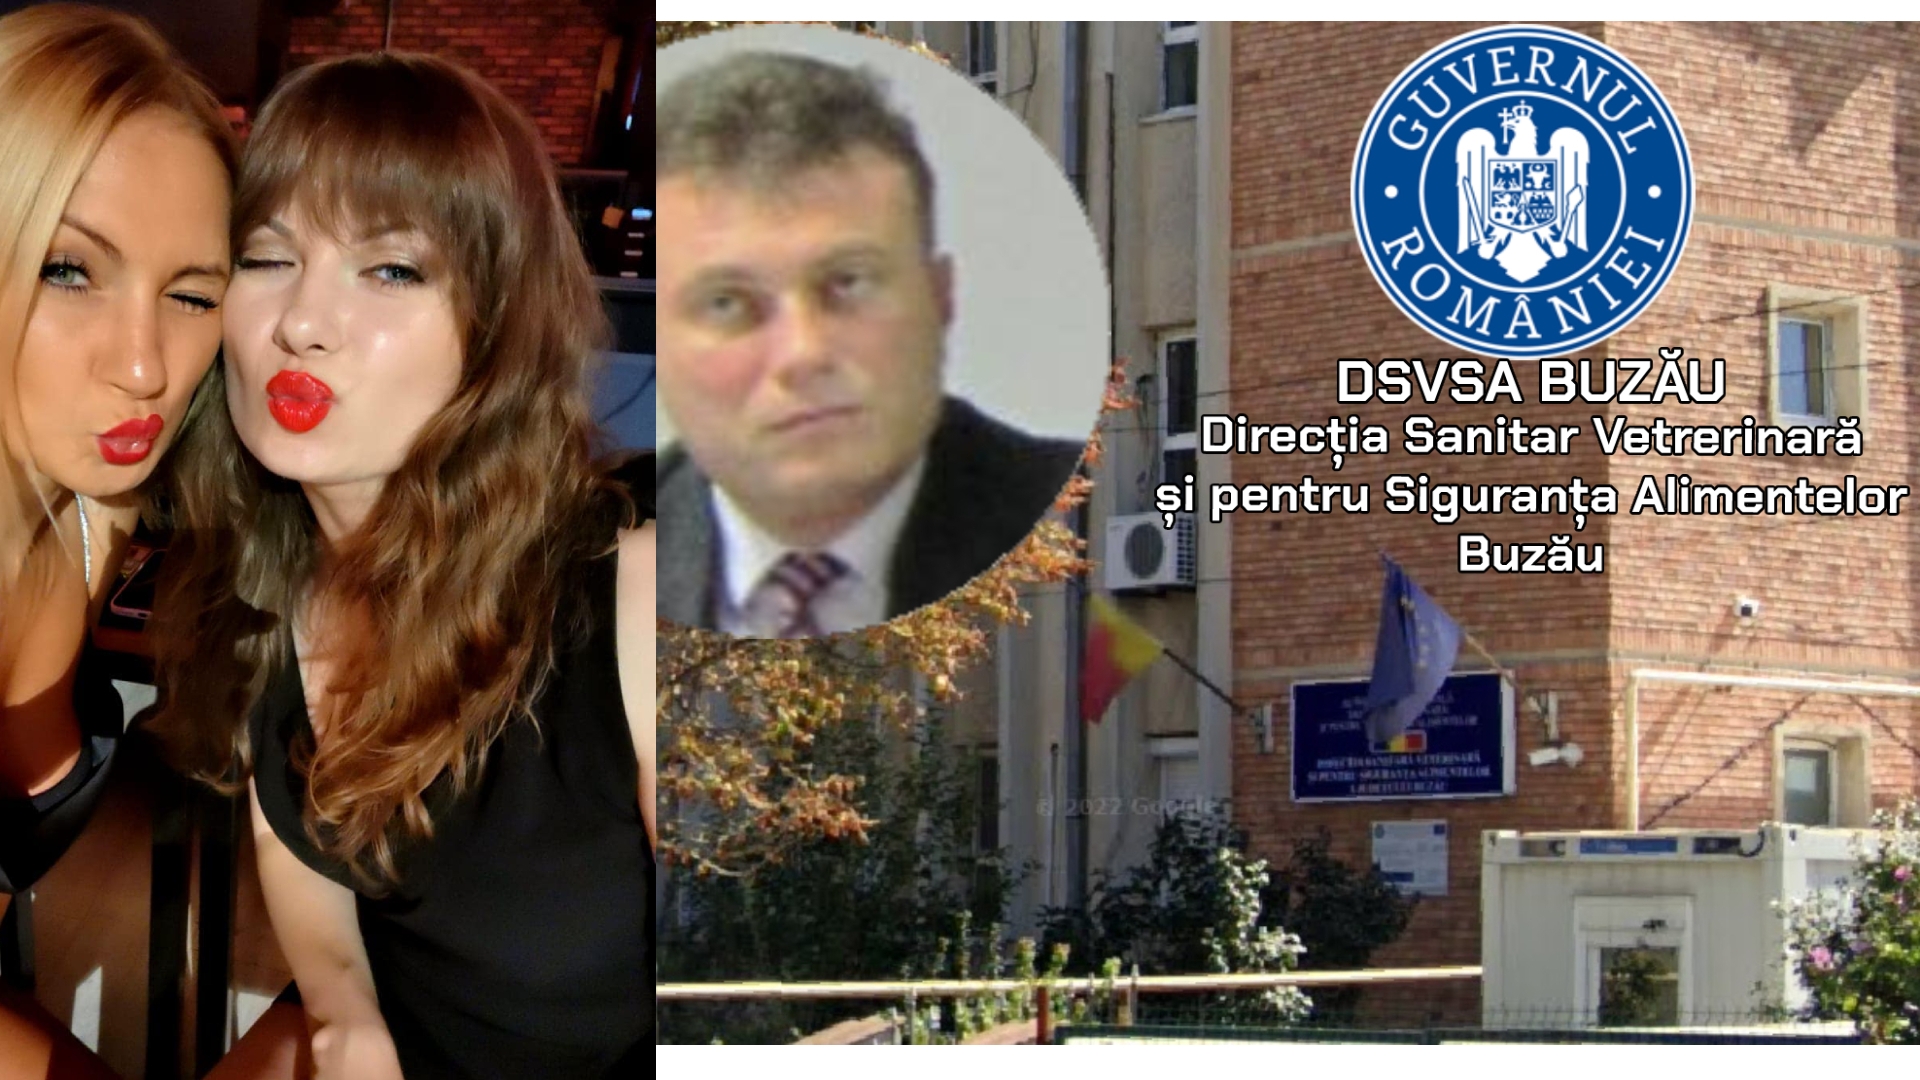 Familie tradițională în instituțiile publice: mama, tata și fiica la DSVSA Buzău. Urmează și fiul